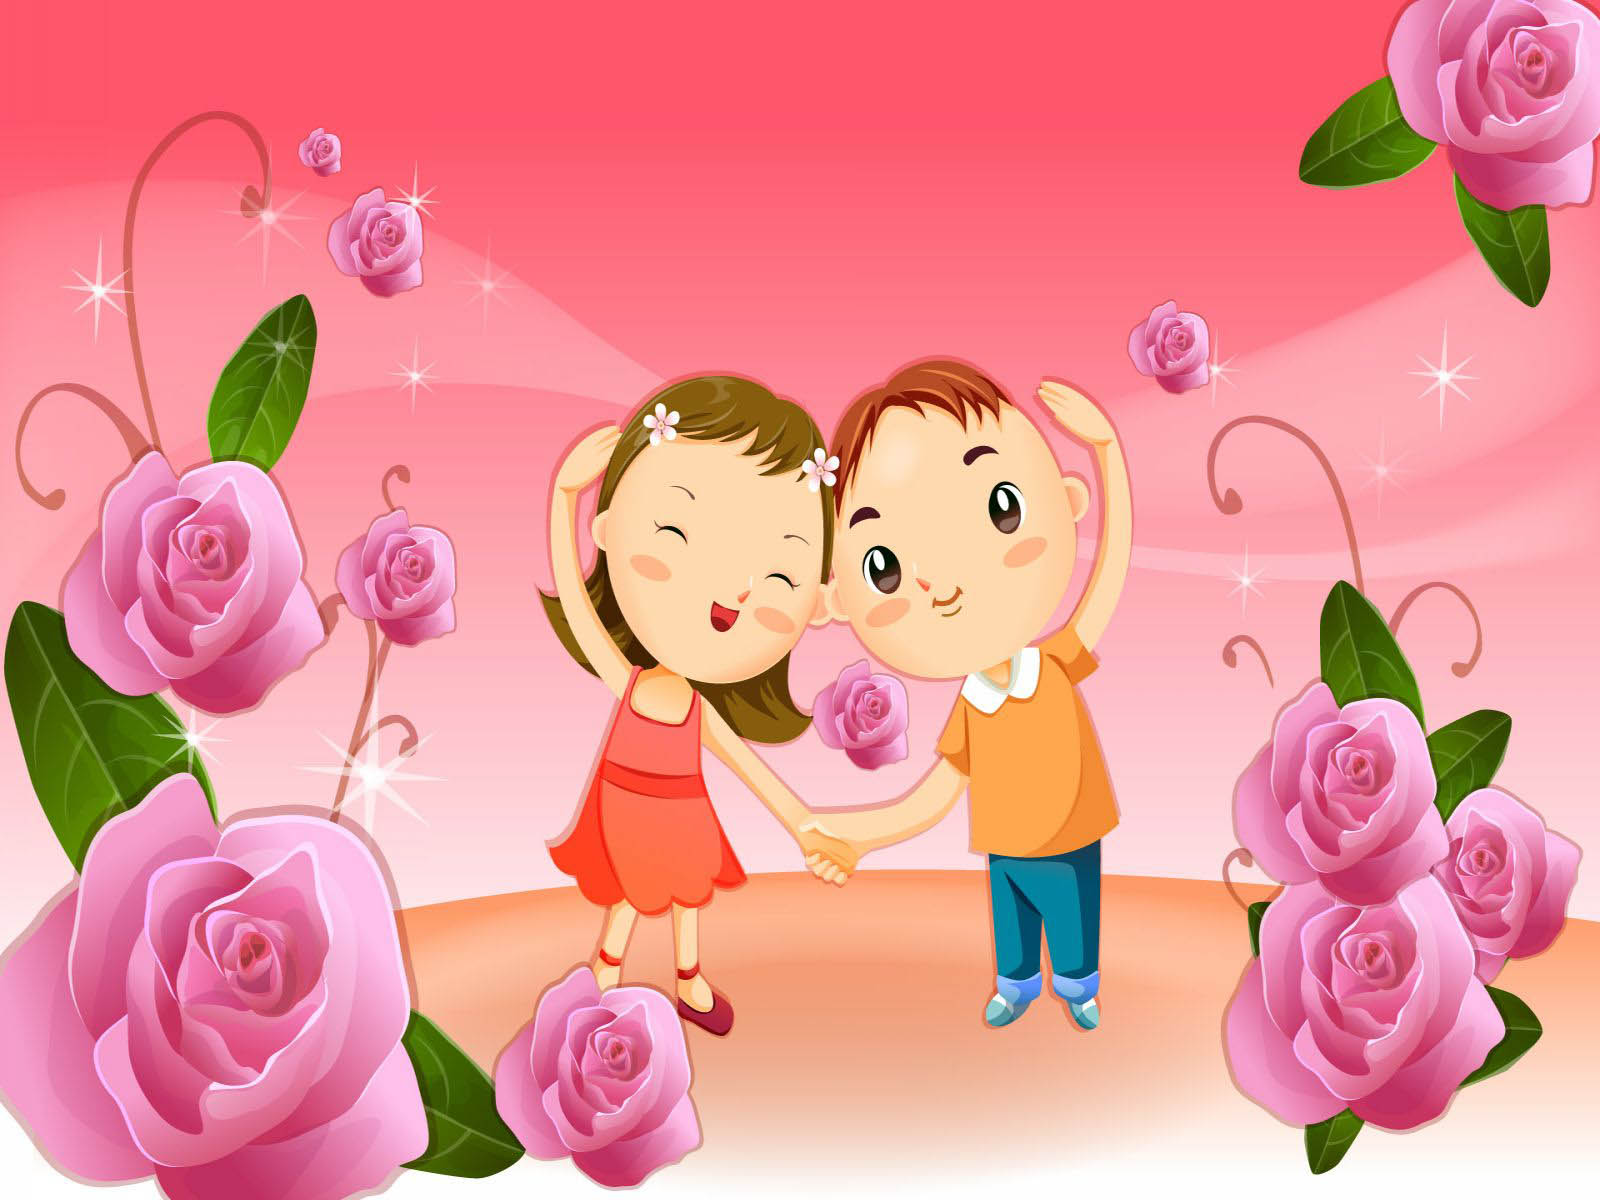 Gambar Kumpulan Gambar Animasi Romantis Sweet Kartun Bunga Lucu Di